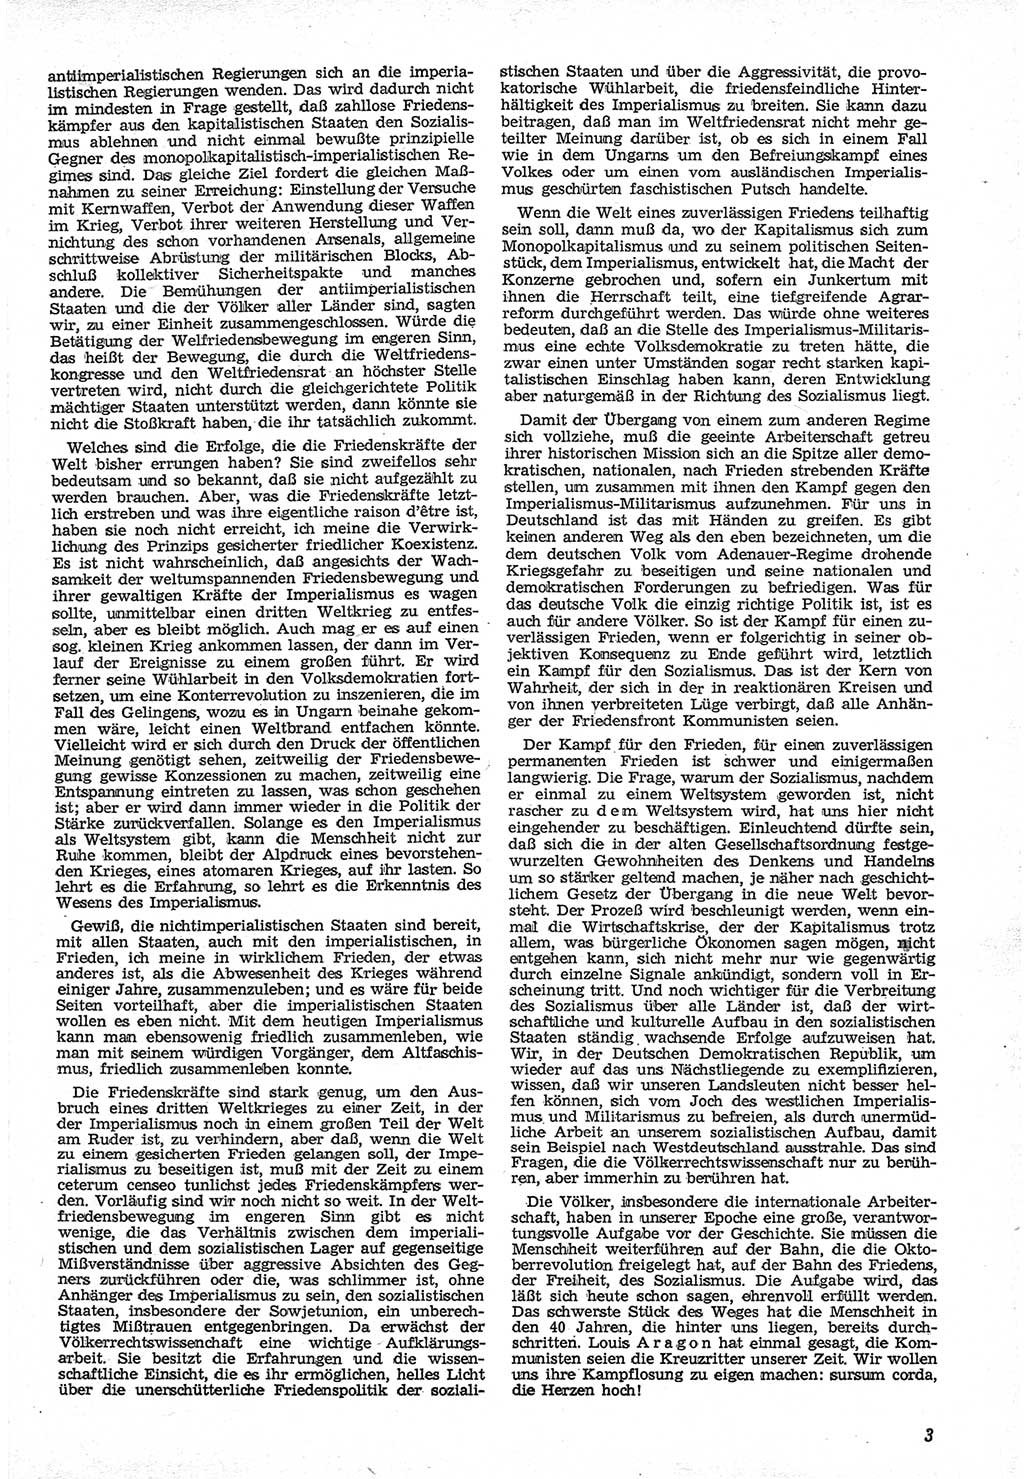 Neue Justiz (NJ), Zeitschrift für Recht und Rechtswissenschaft [Deutsche Demokratische Republik (DDR)], 12. Jahrgang 1958, Seite 3 (NJ DDR 1958, S. 3)